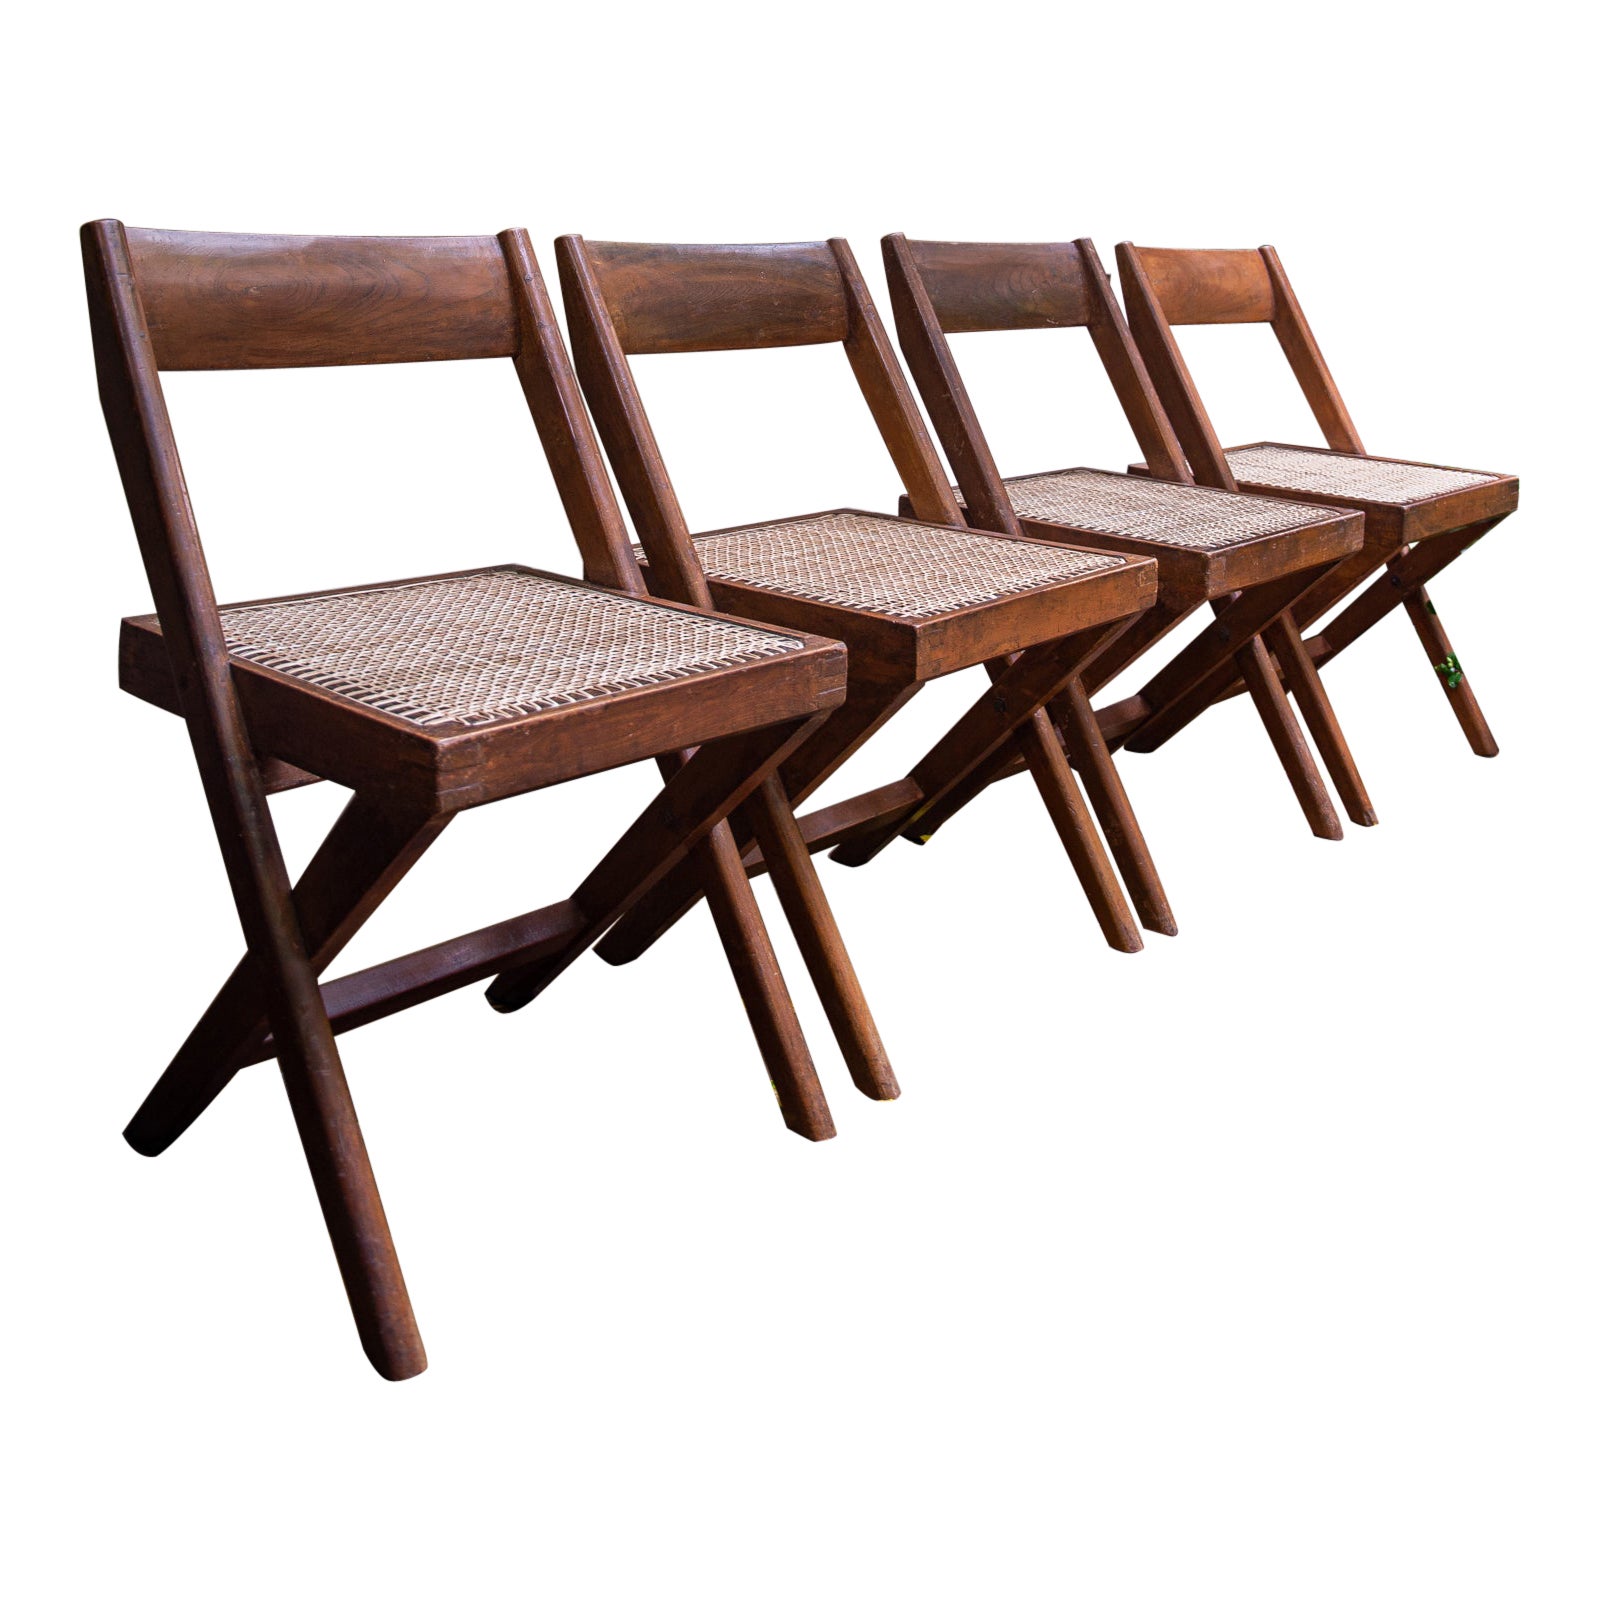 Vier Stühle mit X-Rahmen von Pierre Jeanneret & Eulie Chowdhury, Chandigarh, Indien 1959